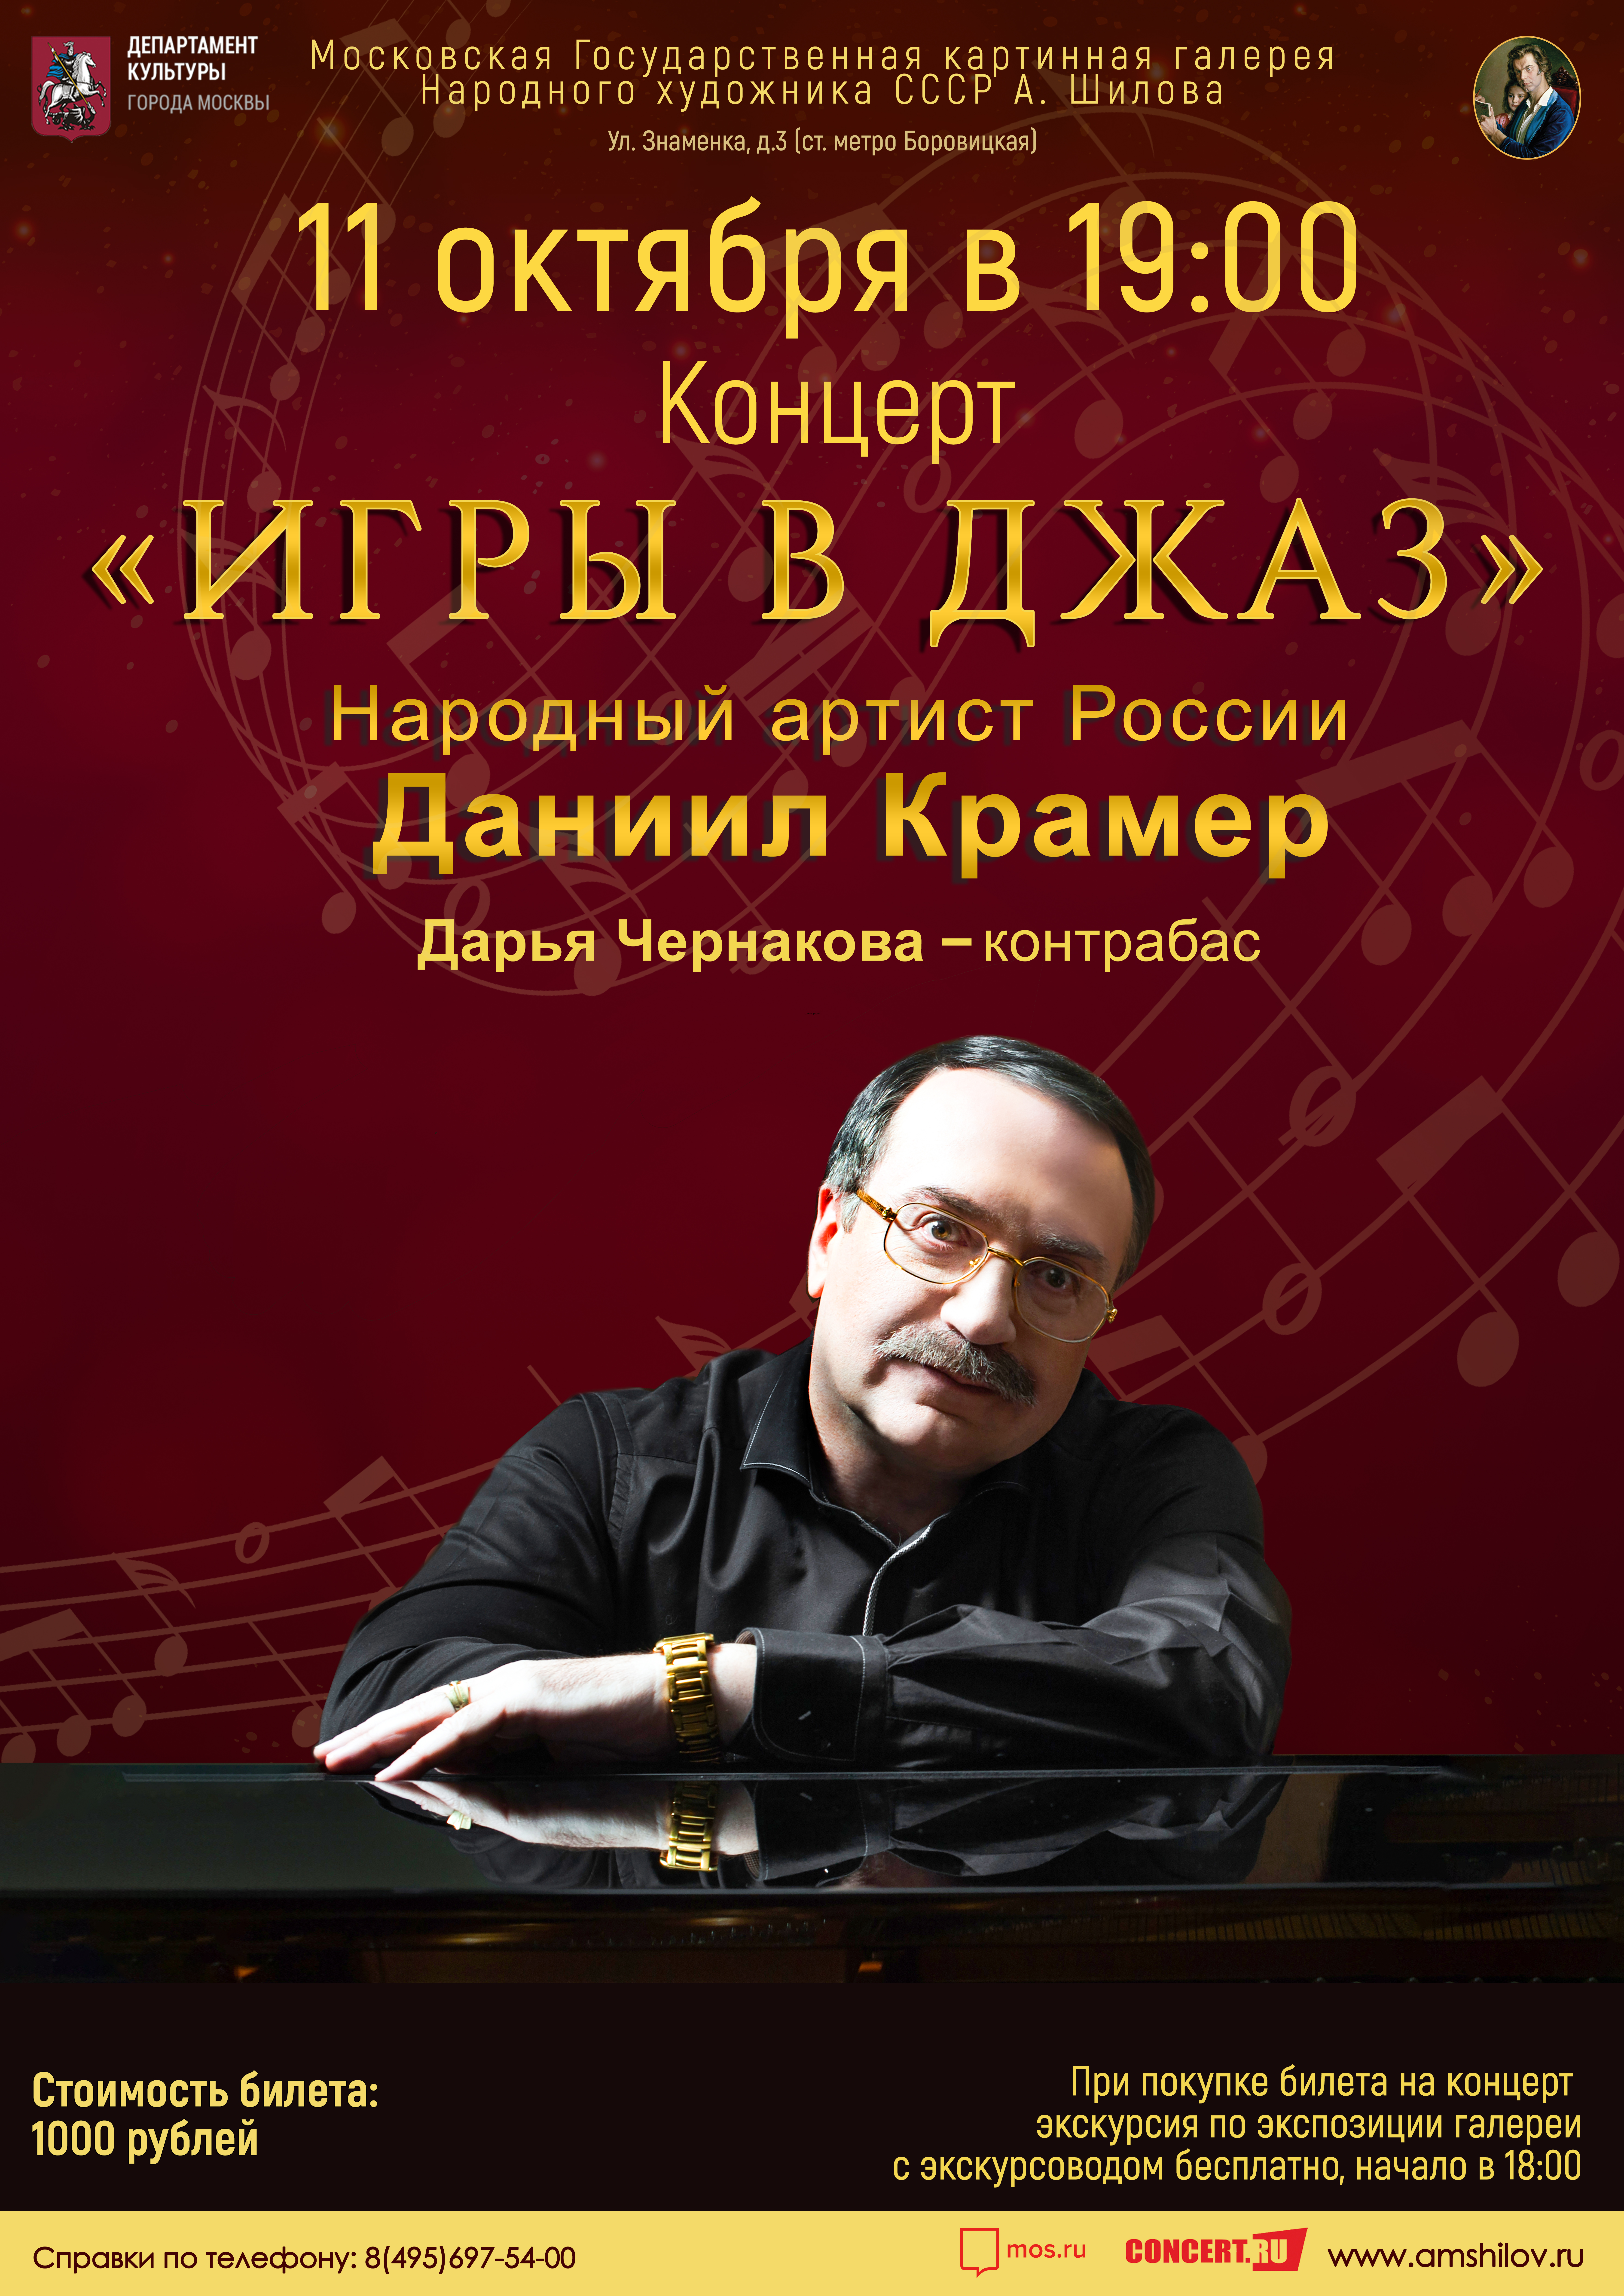 Концерт «Игры в джаз» Народного артиста России Даниила Крамера